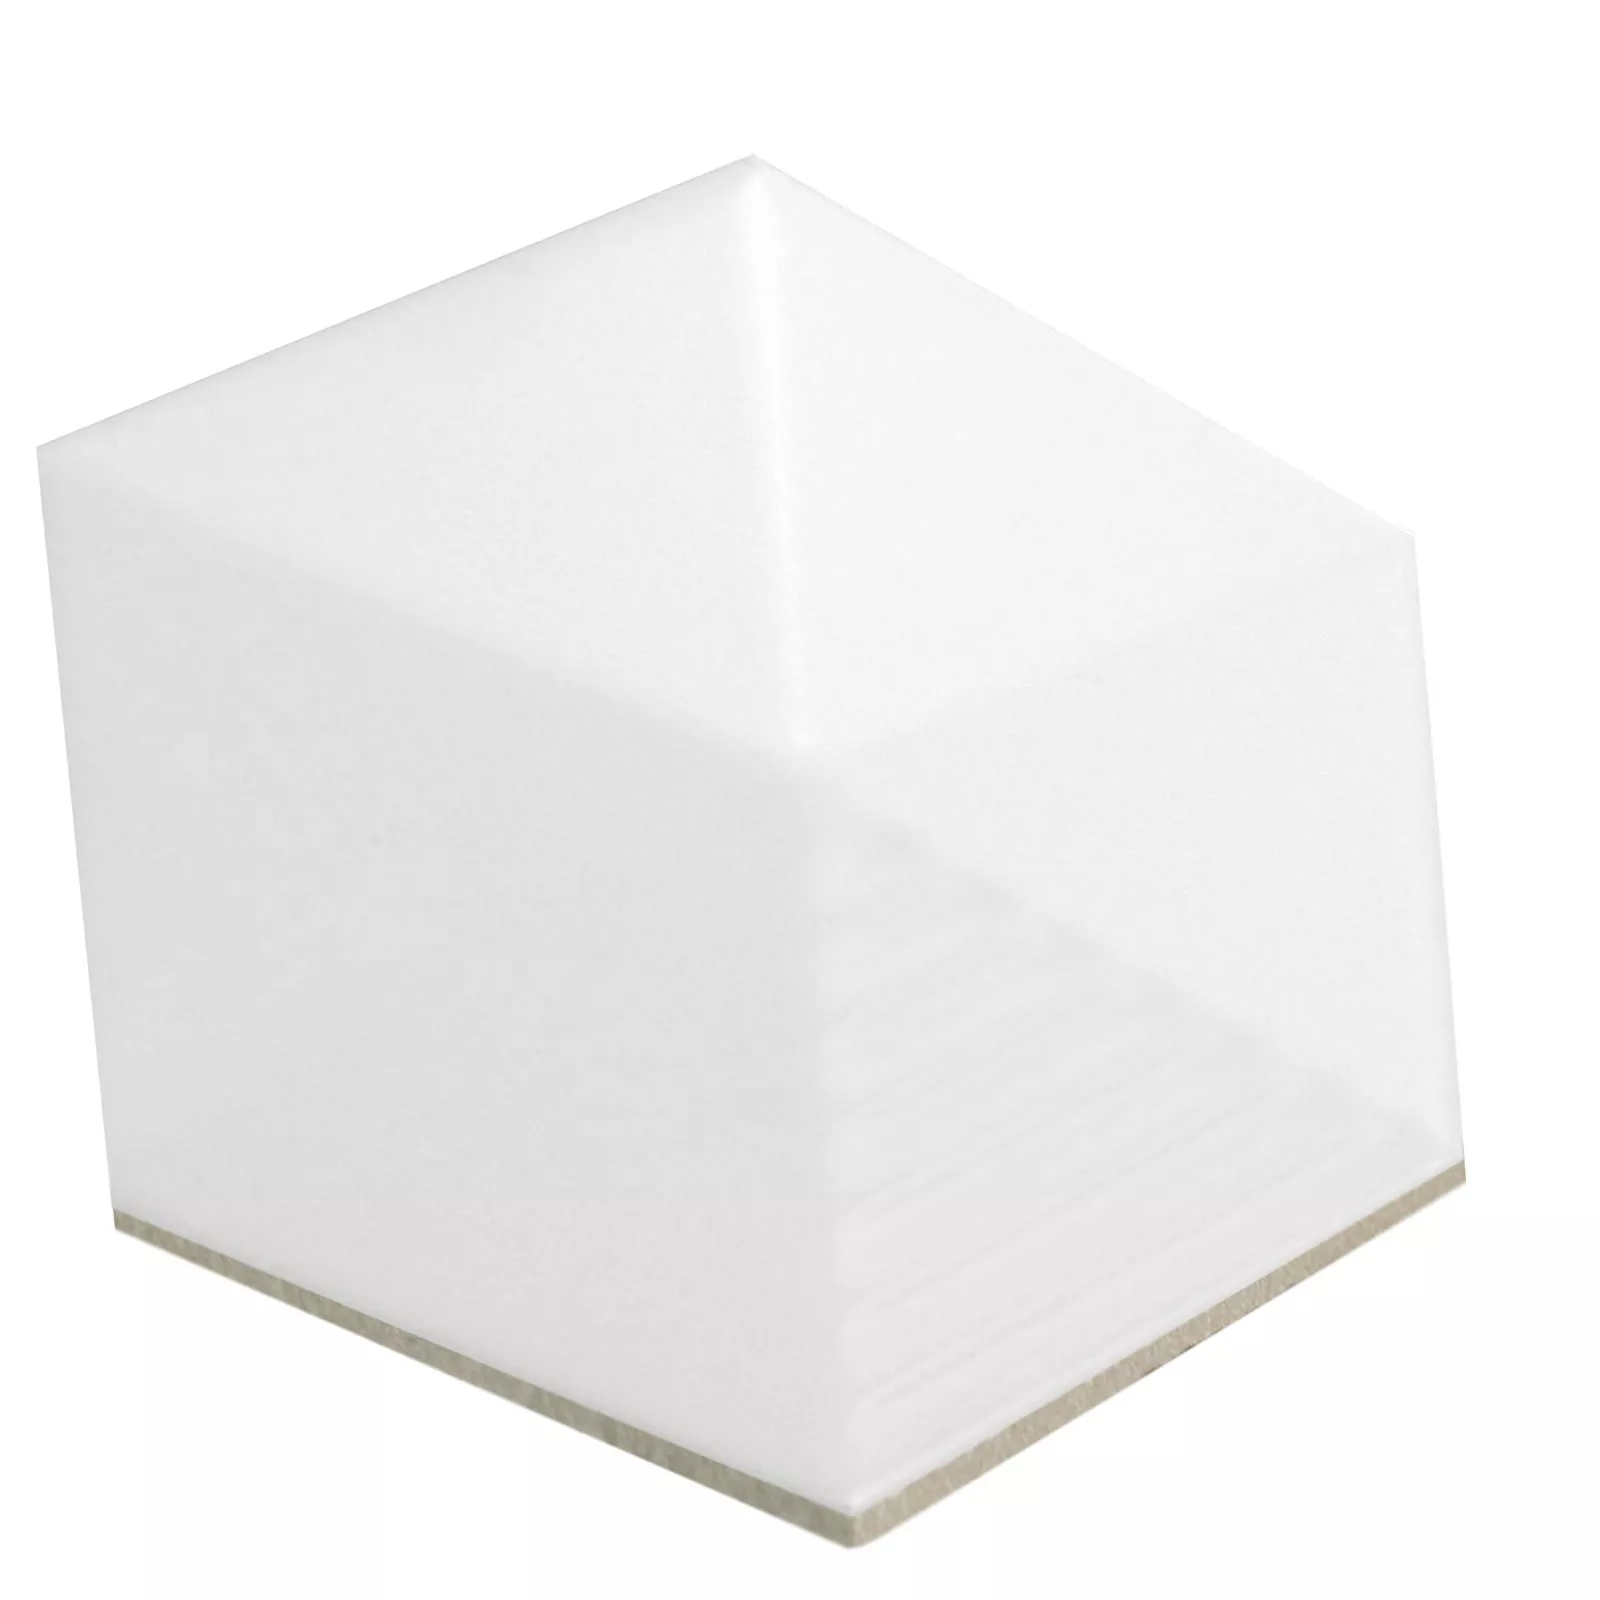 Vægfliser Rockford 3D Hexagon 12,4x10,7cm Hvid Måtte